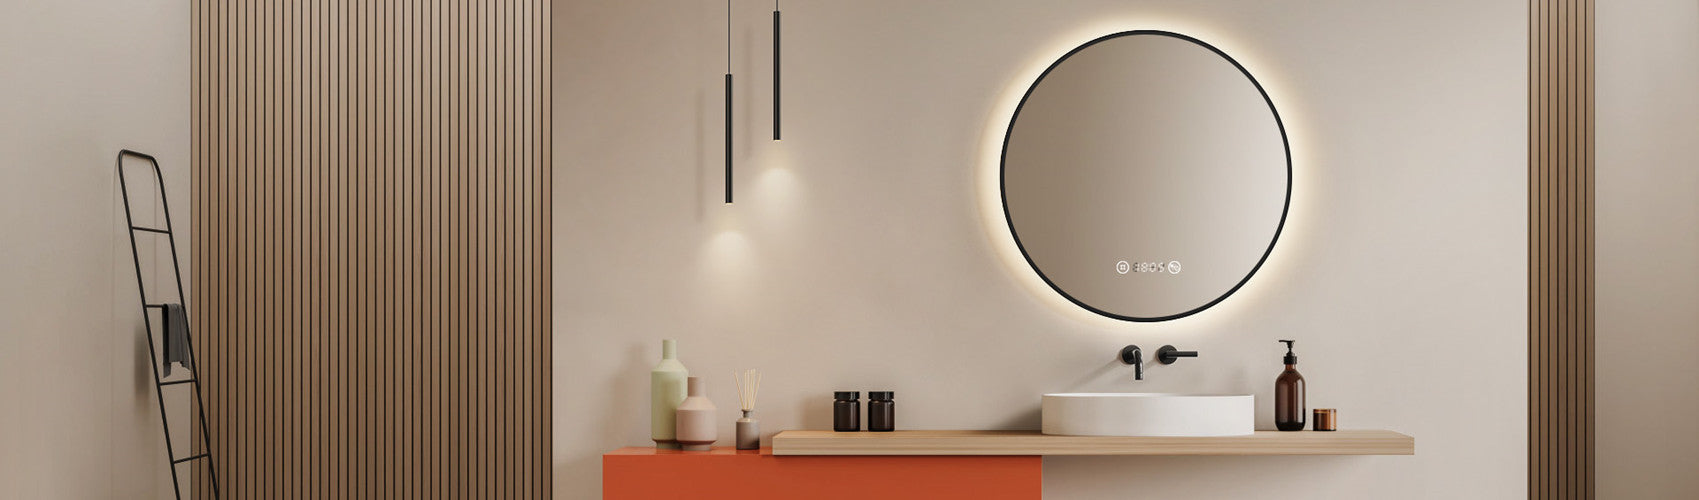 LED Spiegel Badspiegel mit Beleuchtung kaufen